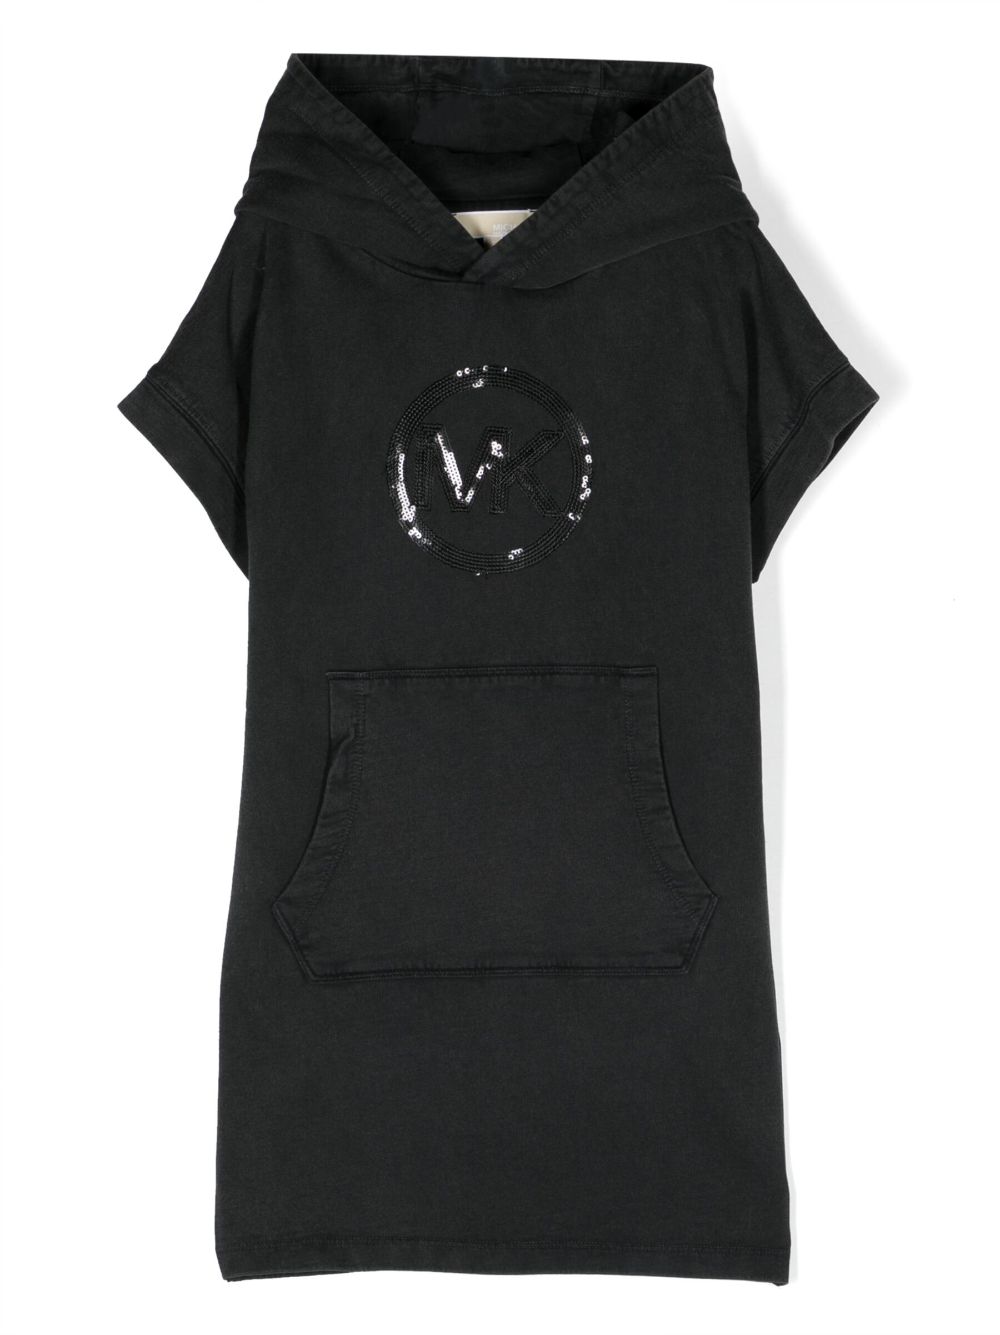 Michael Kors Kids short-sleeved hoodie dress - Black